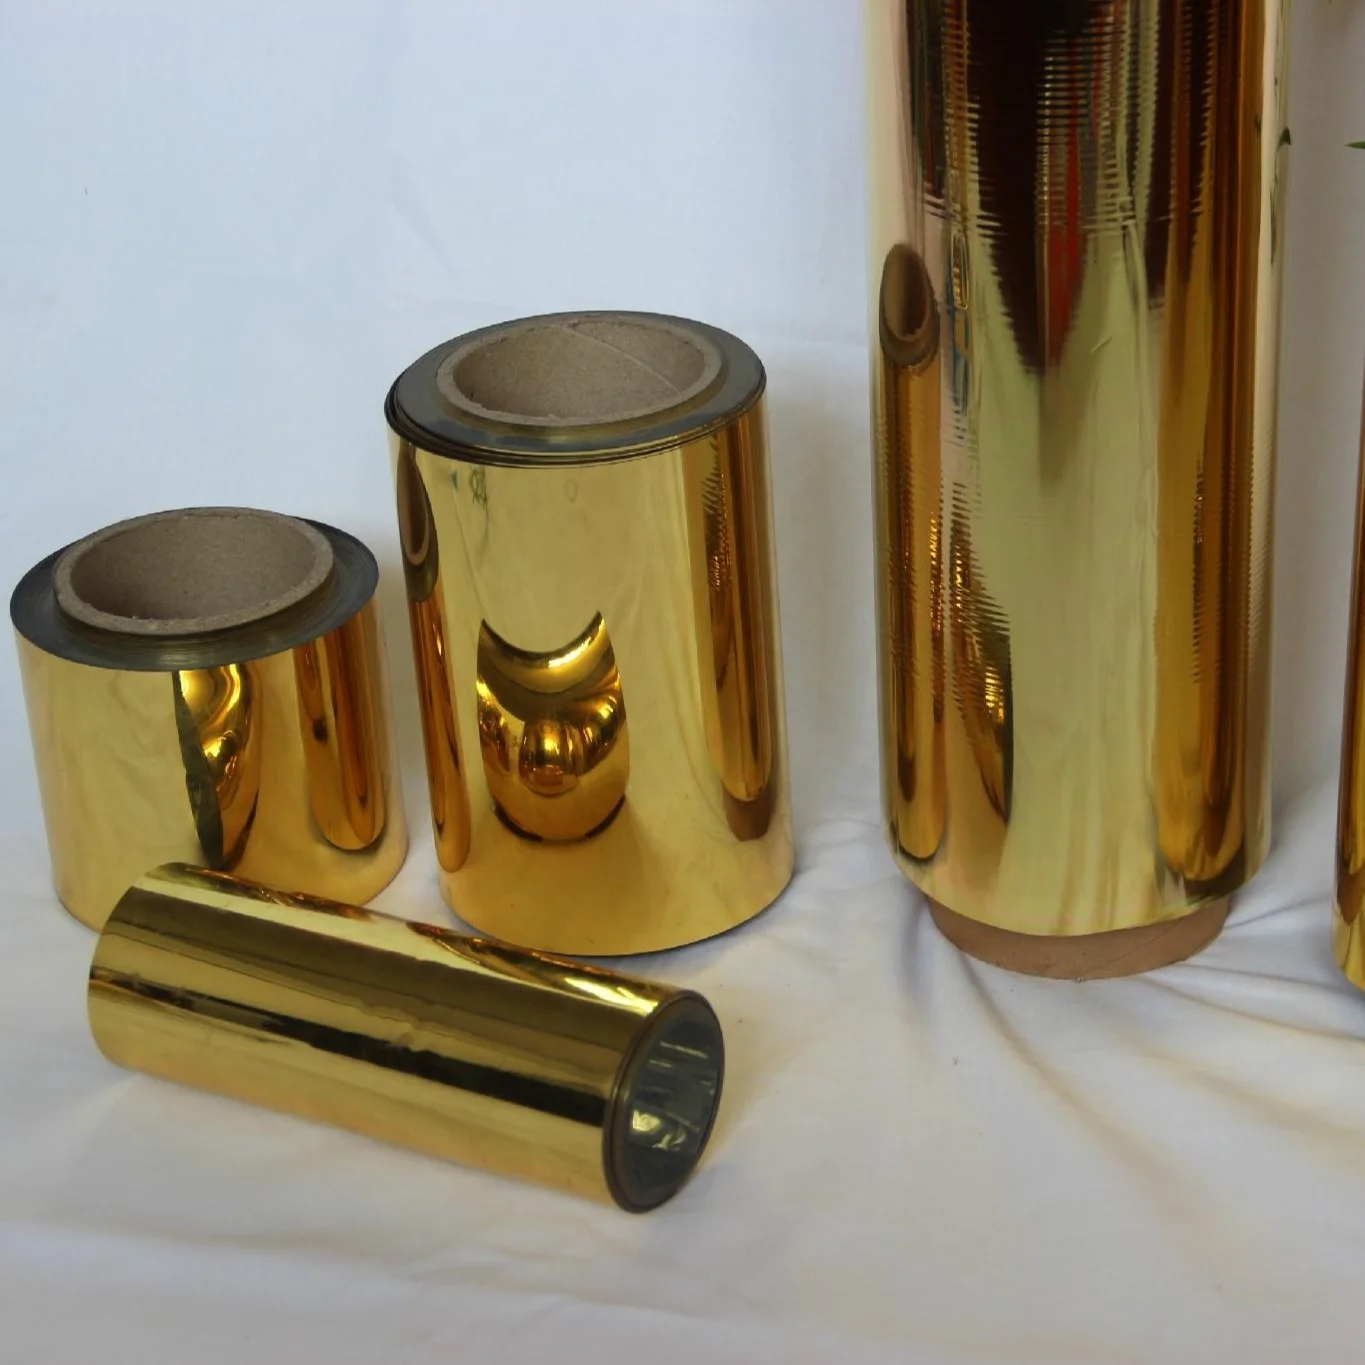 Цветная металлизированная ПЭТ-пленка для гибкой упаковки и украшения